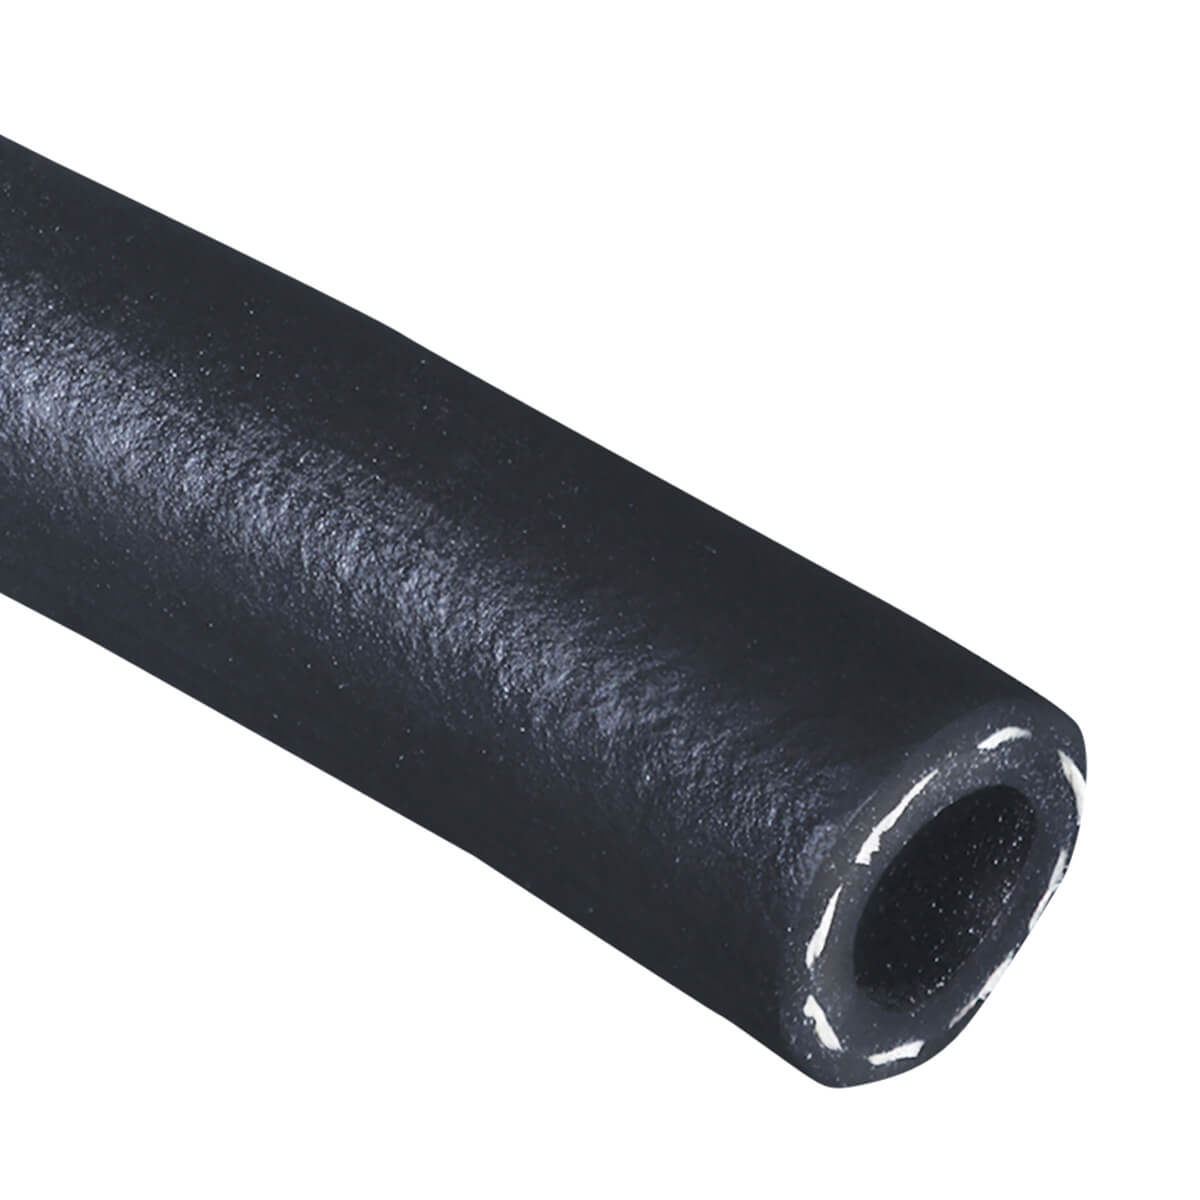 Black 200 PSI Multipurpose - AG 200 - Air & Water Hose - 3/8-in - Price Per ft